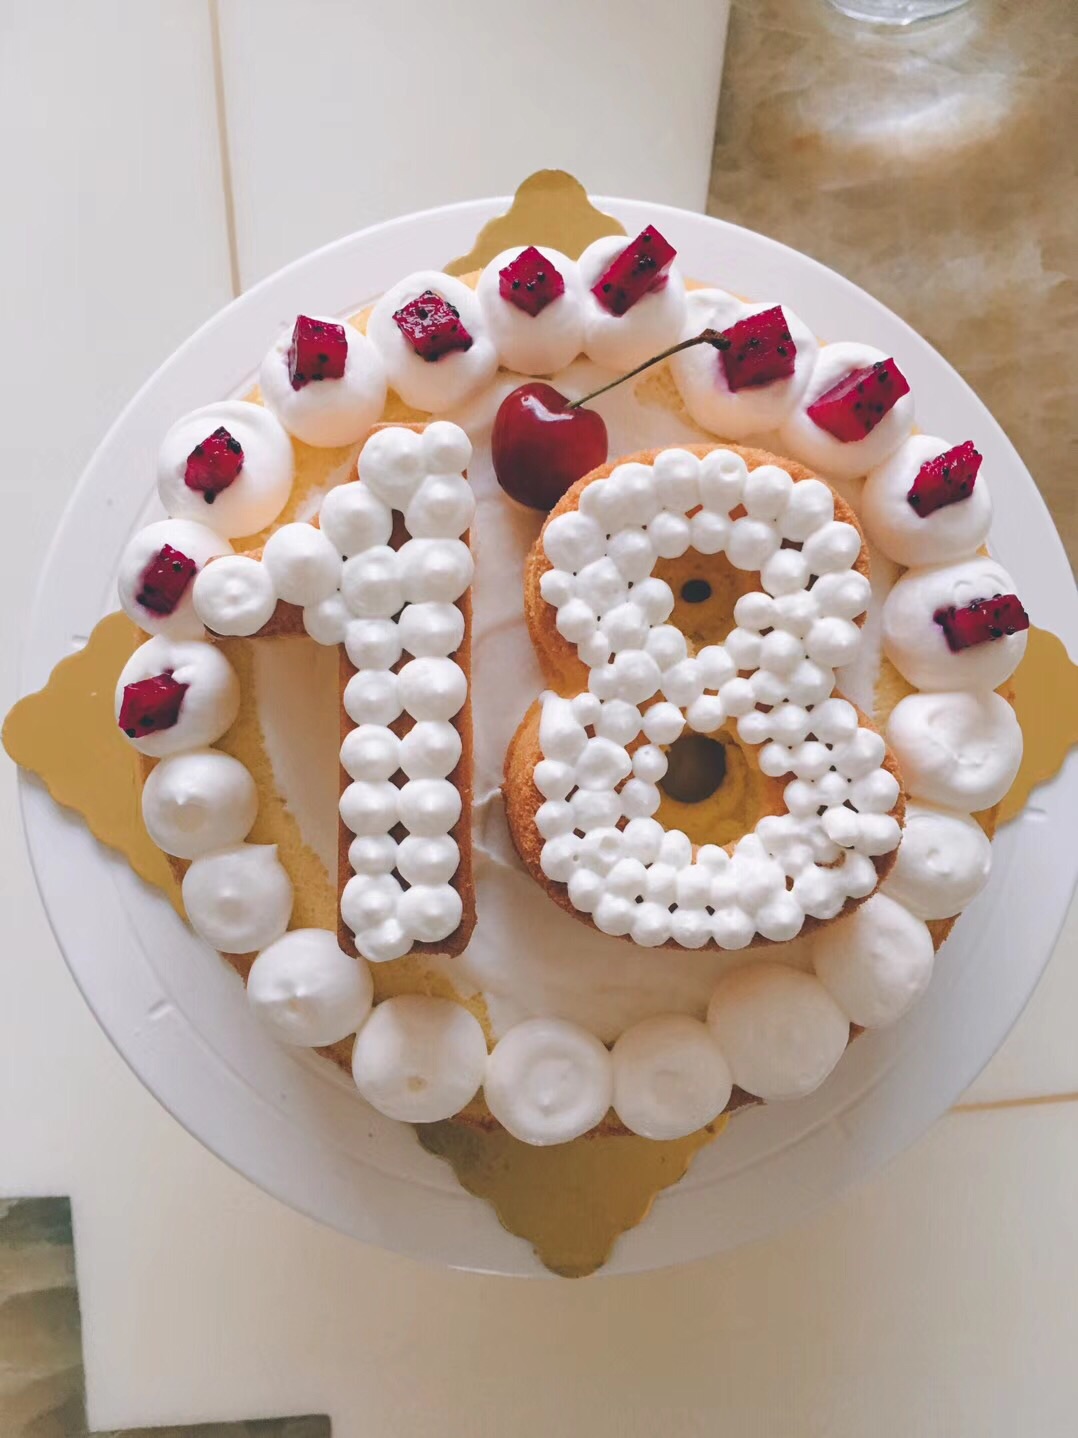 水果裸蛋糕生日蛋糕——永远十八岁